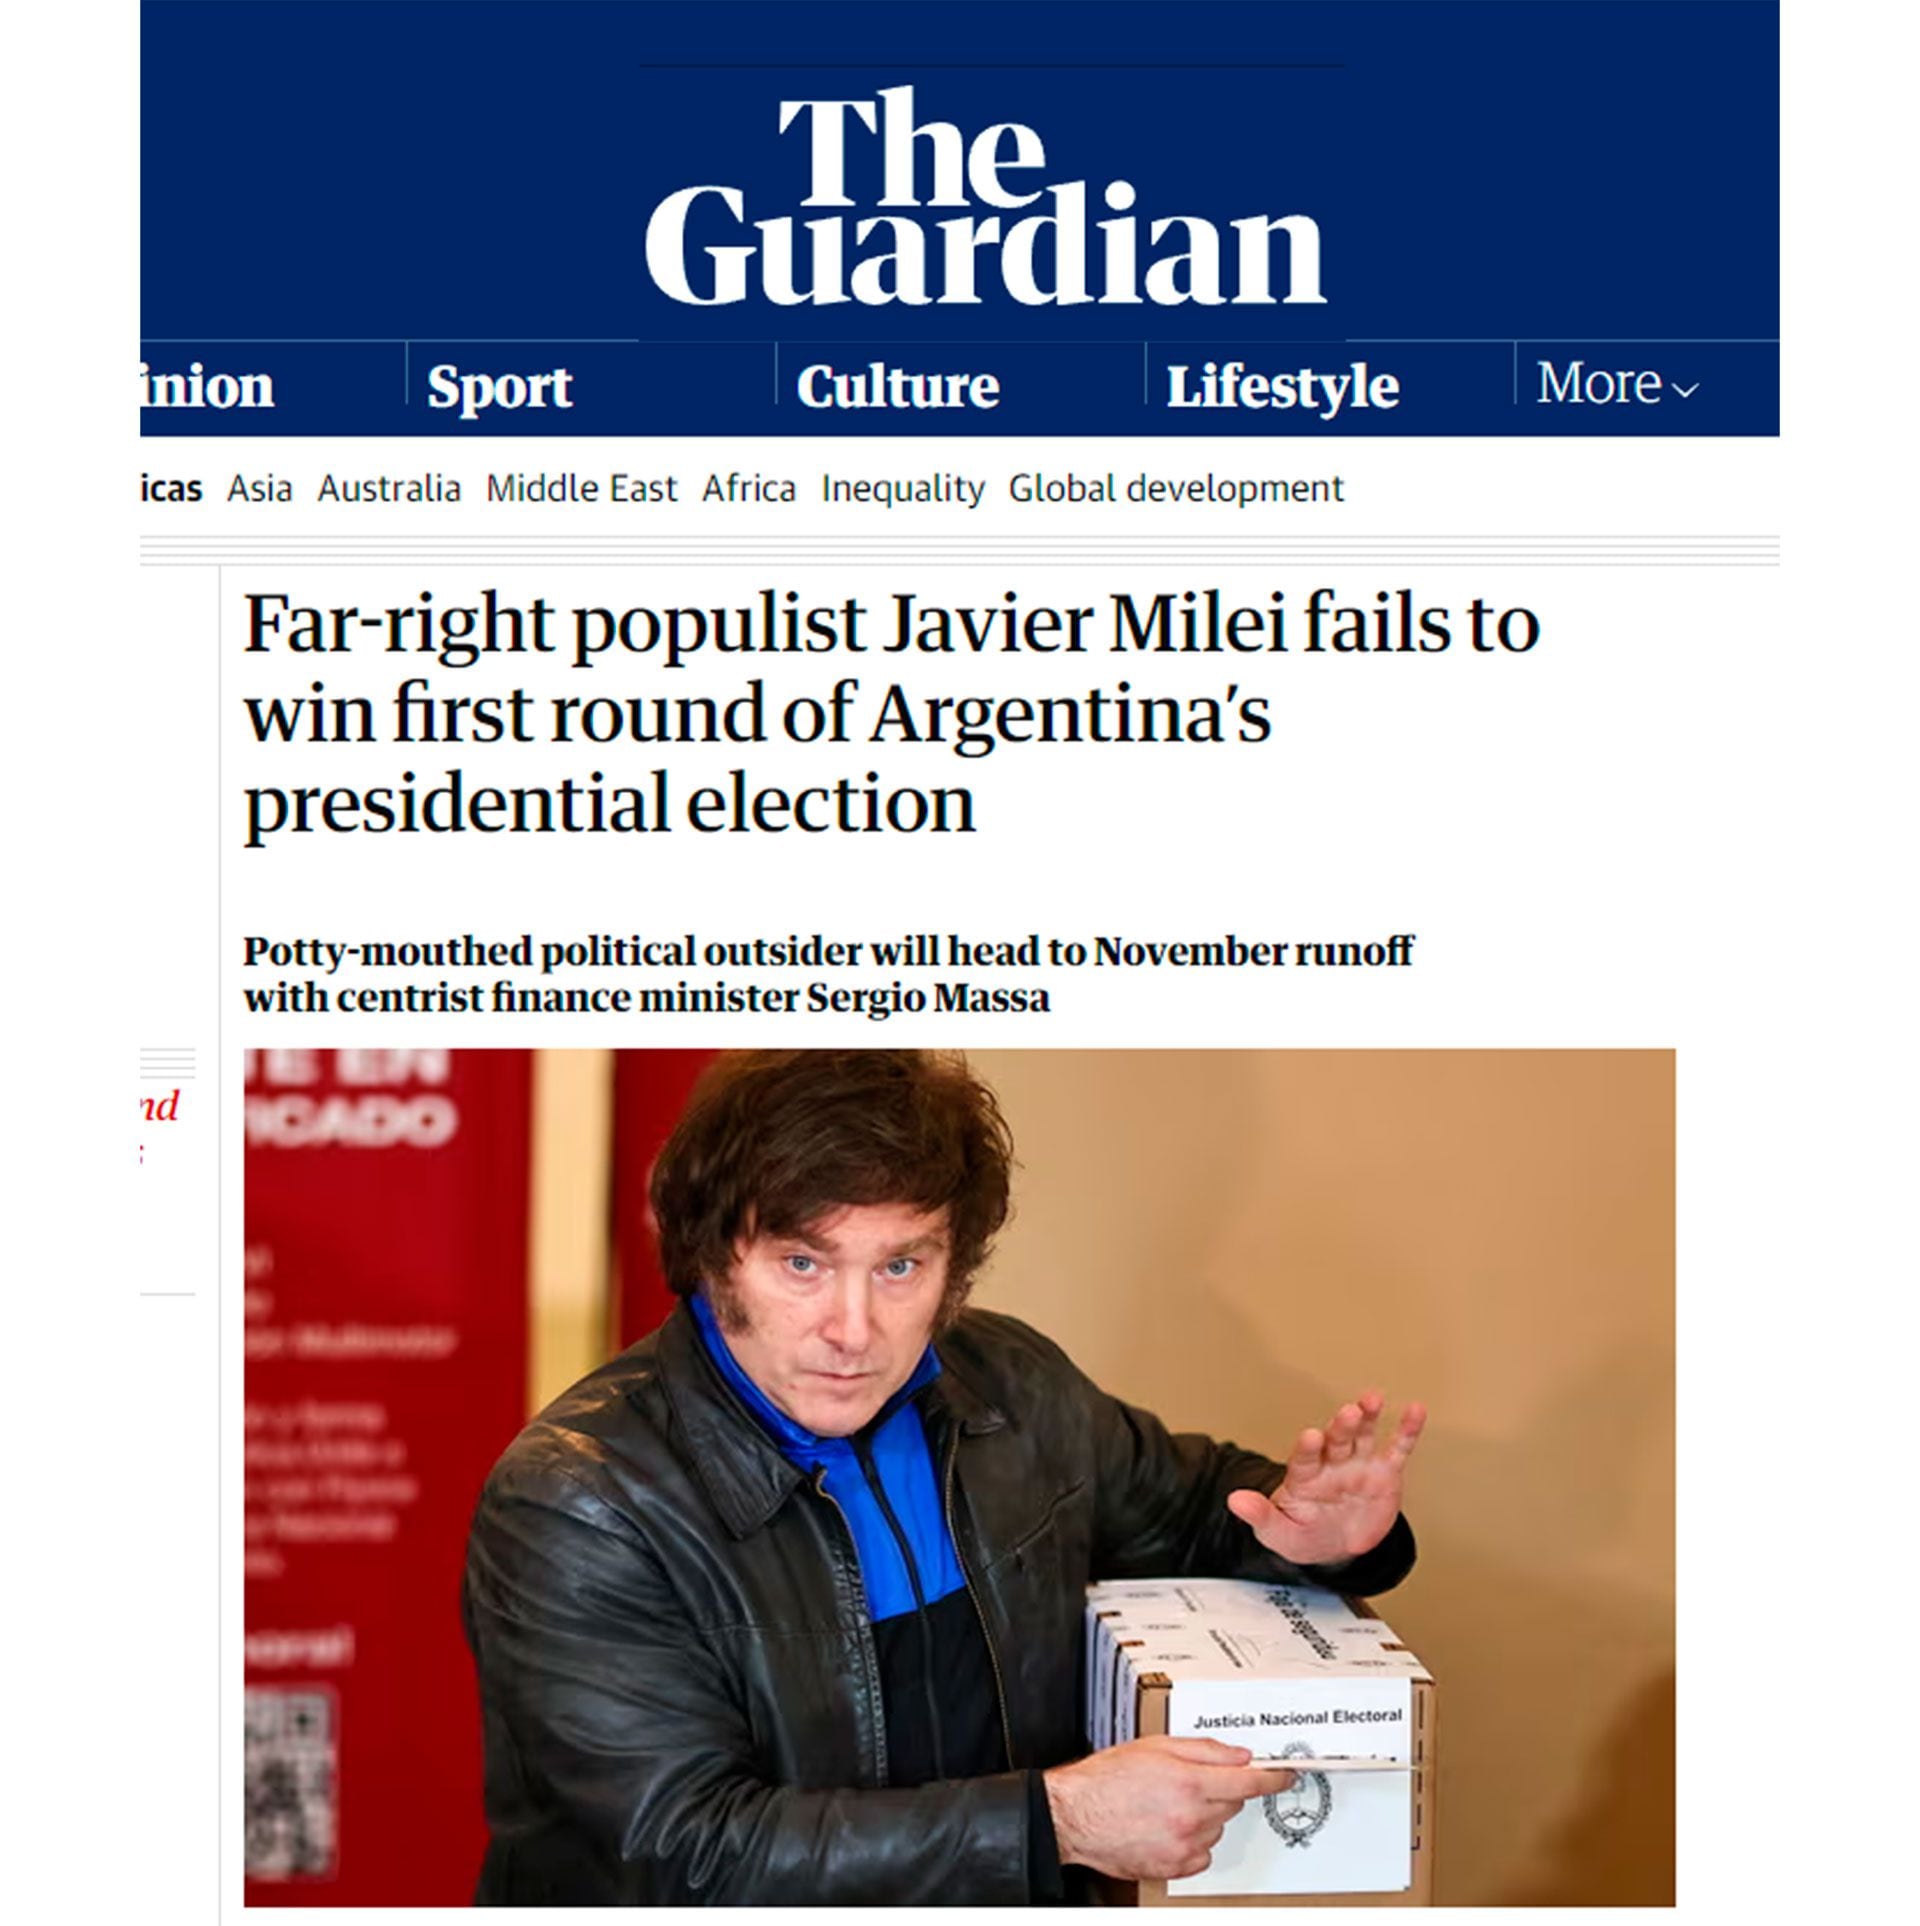 “El populista de extrema derecha Javier Milei no gana la primera vuelta de las elecciones presidenciales argentinas